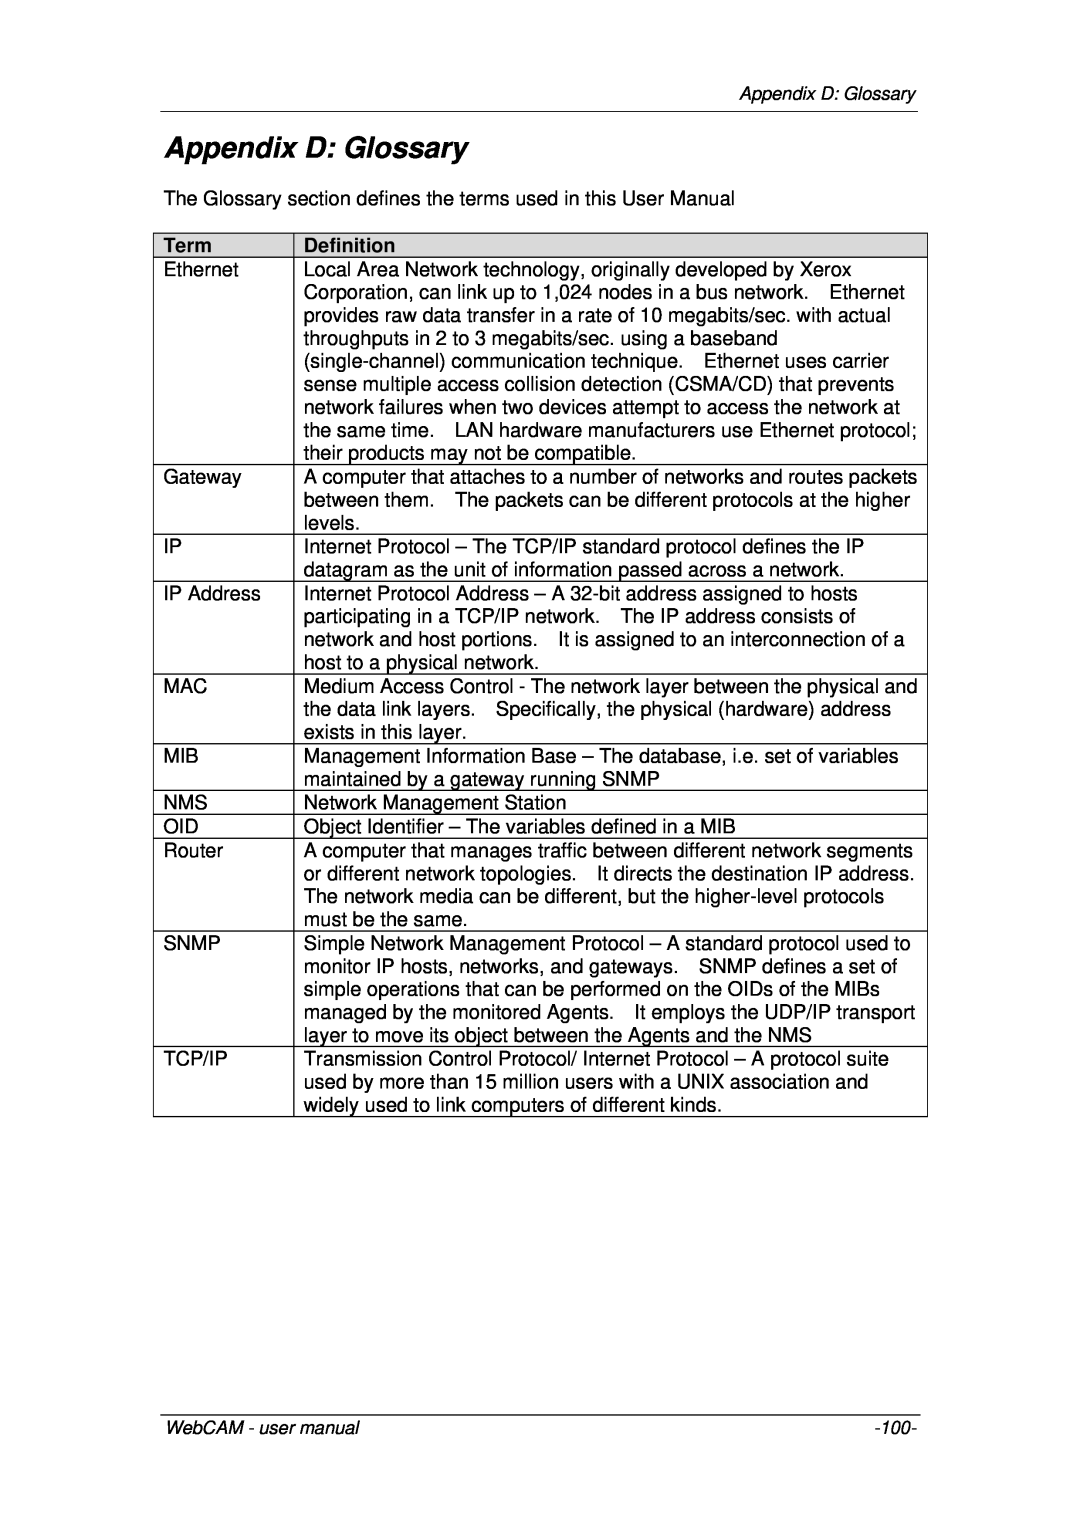 3Com iCV-08, iCV-01a, iCV-03a user manual Appendix D Glossary, Term, Definition 